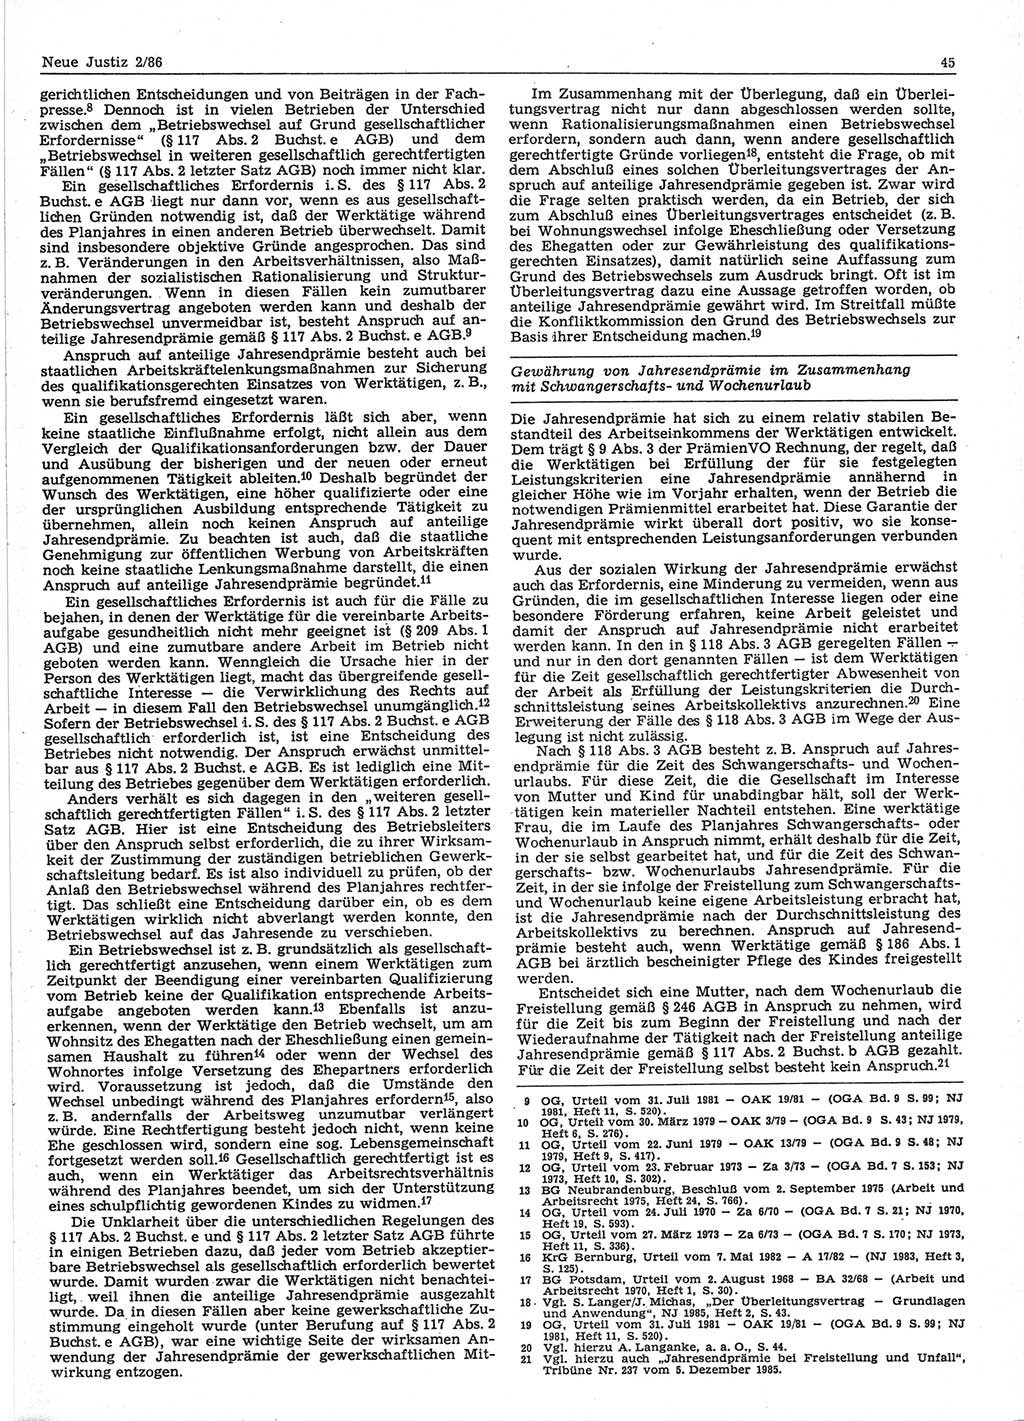 Neue Justiz (NJ), Zeitschrift für sozialistisches Recht und Gesetzlichkeit [Deutsche Demokratische Republik (DDR)], 40. Jahrgang 1986, Seite 45 (NJ DDR 1986, S. 45)